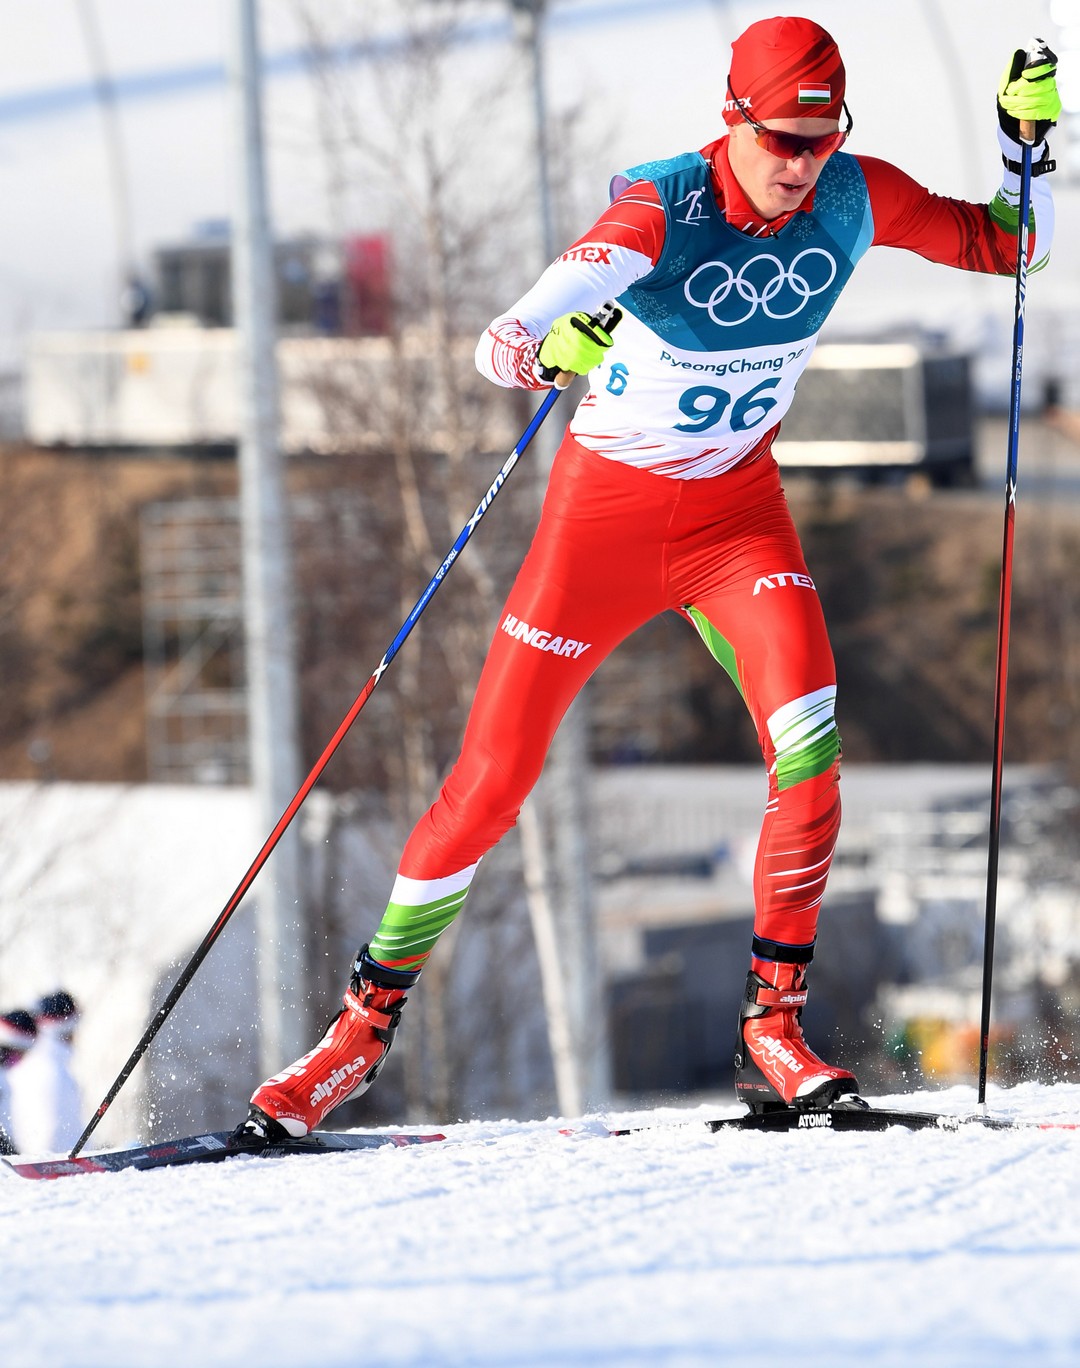 Kónya Ádám a 2018-as Pjongcsangi téli olimpia olimpikonja. A képet a funkcionális jóga termében bármikor megnézheted.